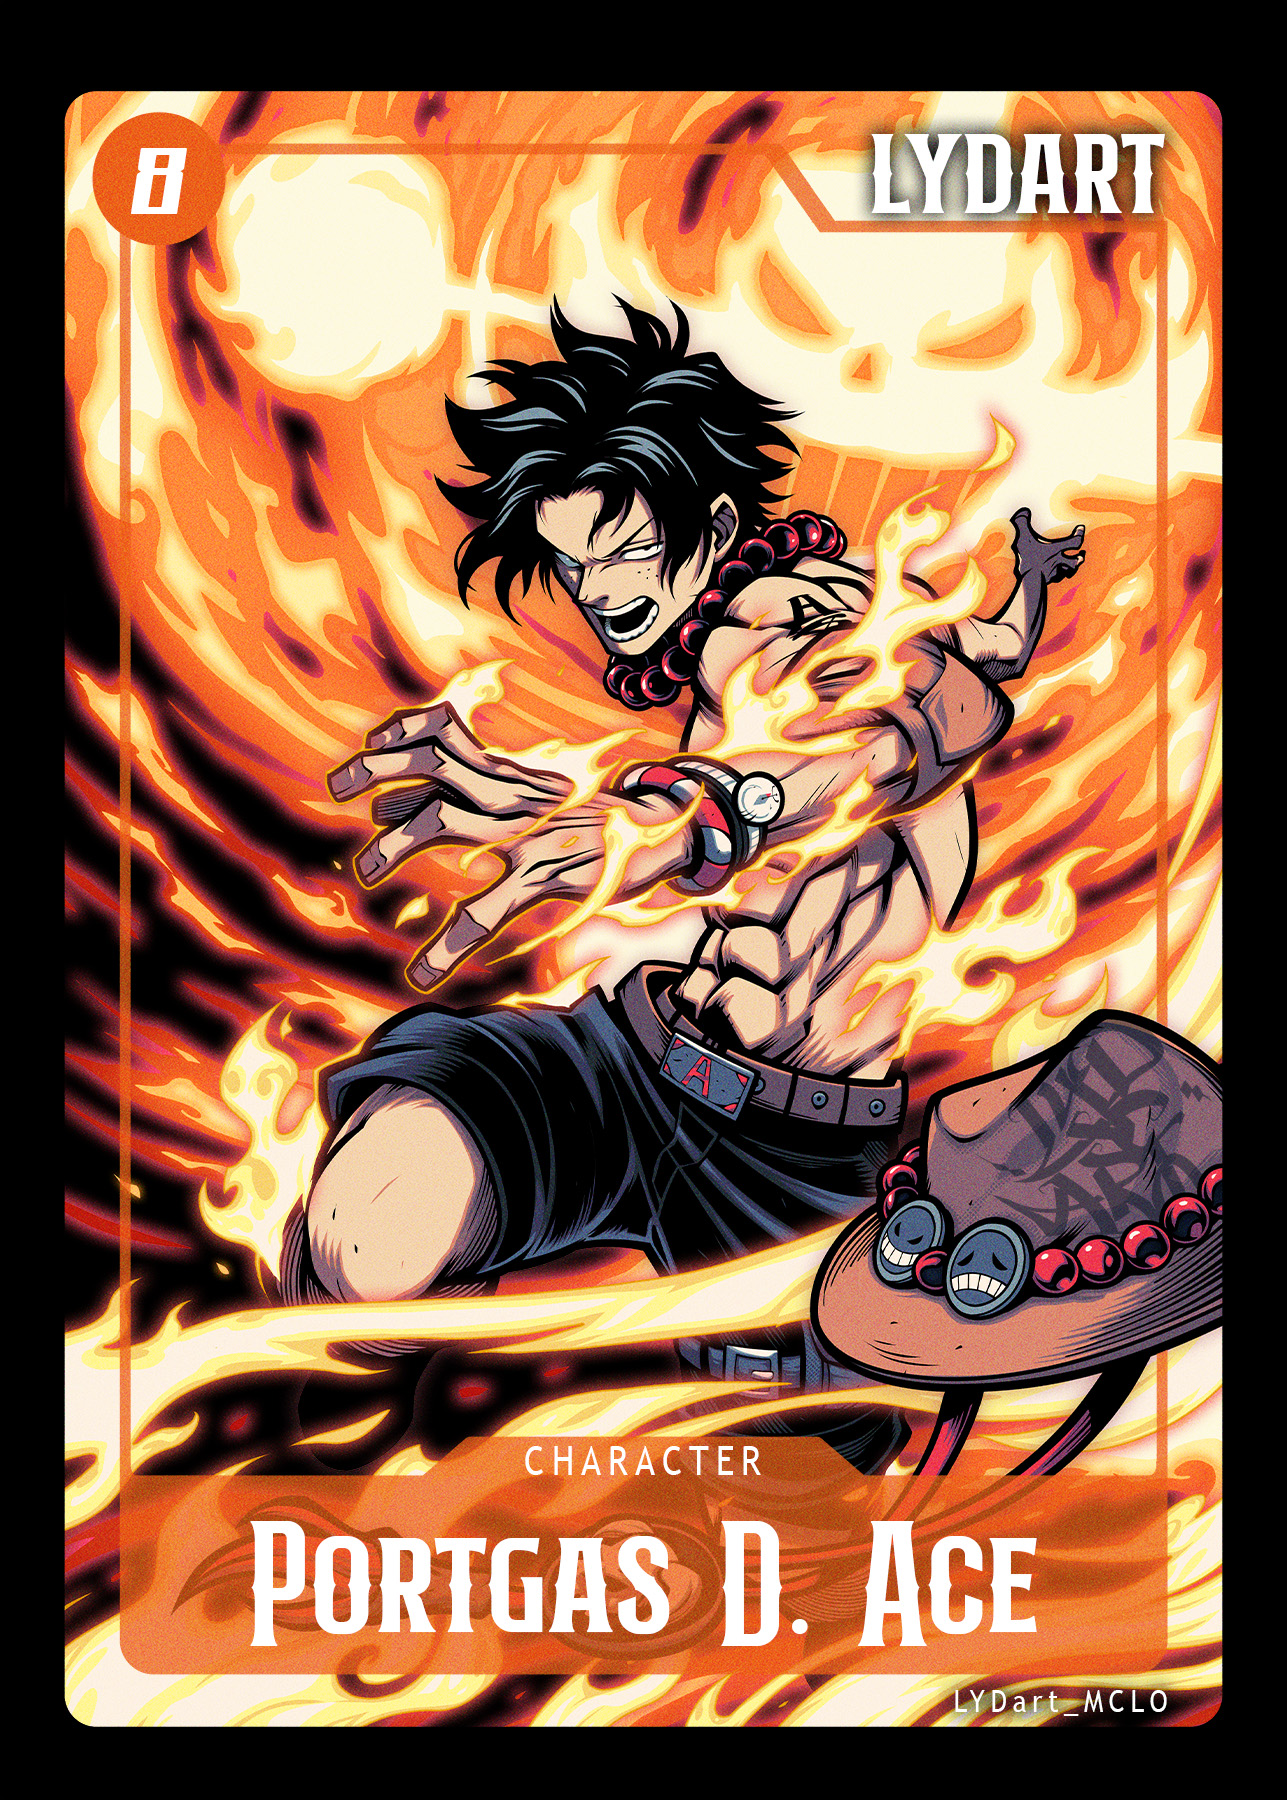 Anime 1287x1800 One Piece LYDart_Mclo @PotatoKingTCG Portgas D. Ace fire anime boys anime hat Trading Card Games cards